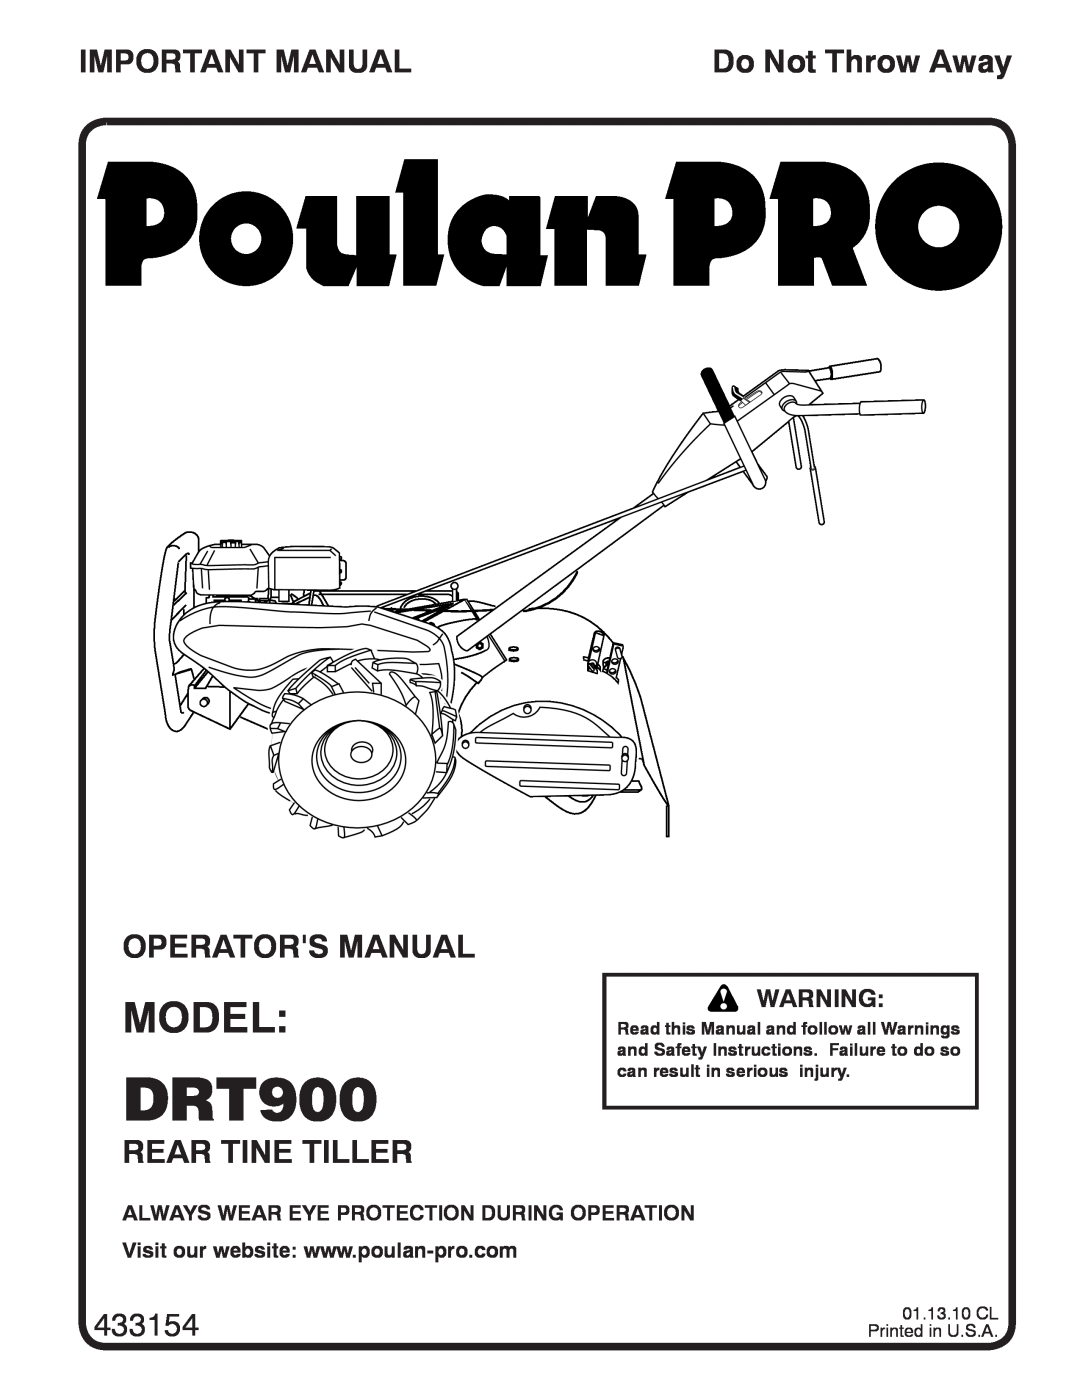 Poulan 433154, 96092002300 manual Model, Important Manual, Operators Manual, Rear Tine Tiller, DRT900, Do Not Throw Away 